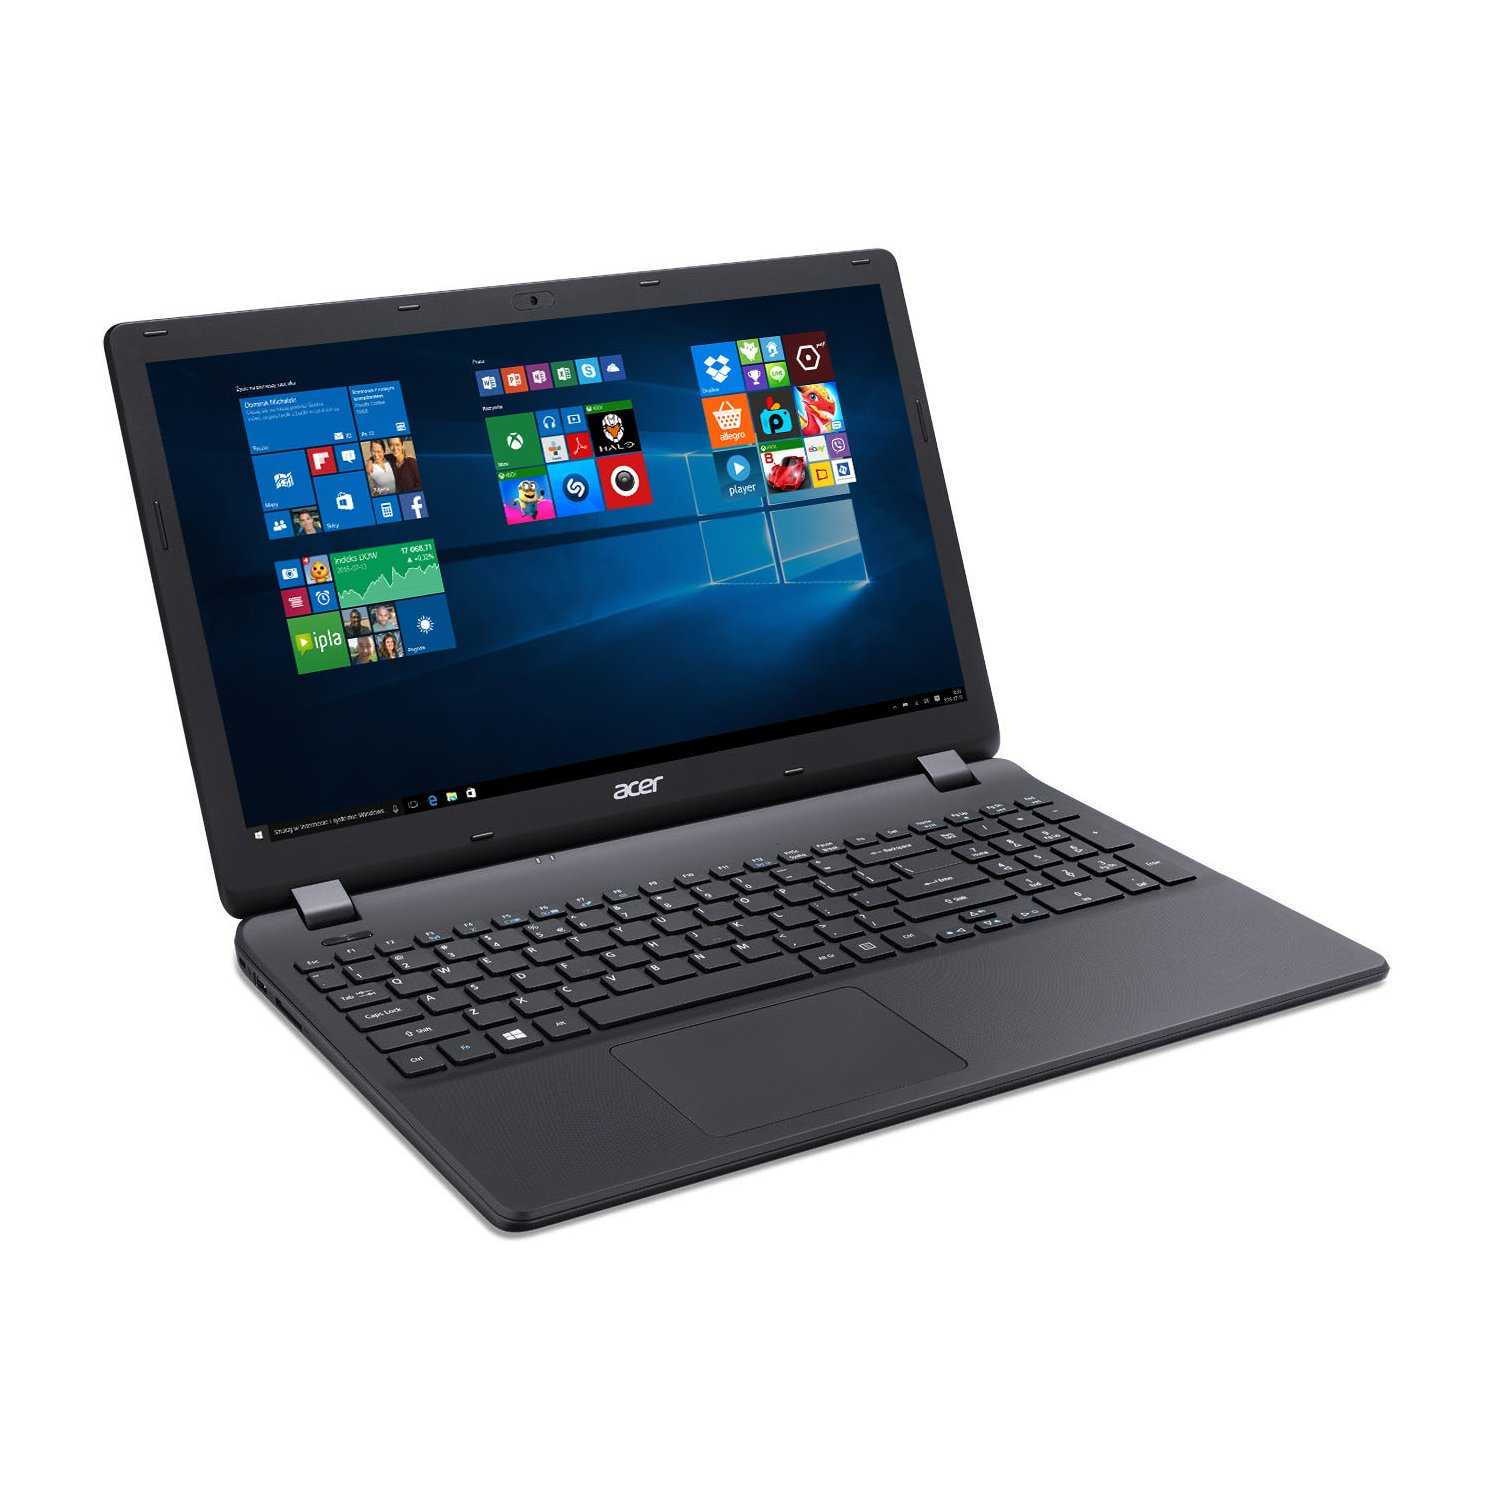 Ноутбук Acer Aspire ES1-711G-P6VF (NXMS3EU003) Black - подробные характеристики обзоры видео фото Цены в интернет-магазинах где можно купить ноутбук Acer Aspire ES1-711G-P6VF (NXMS3EU003) Black